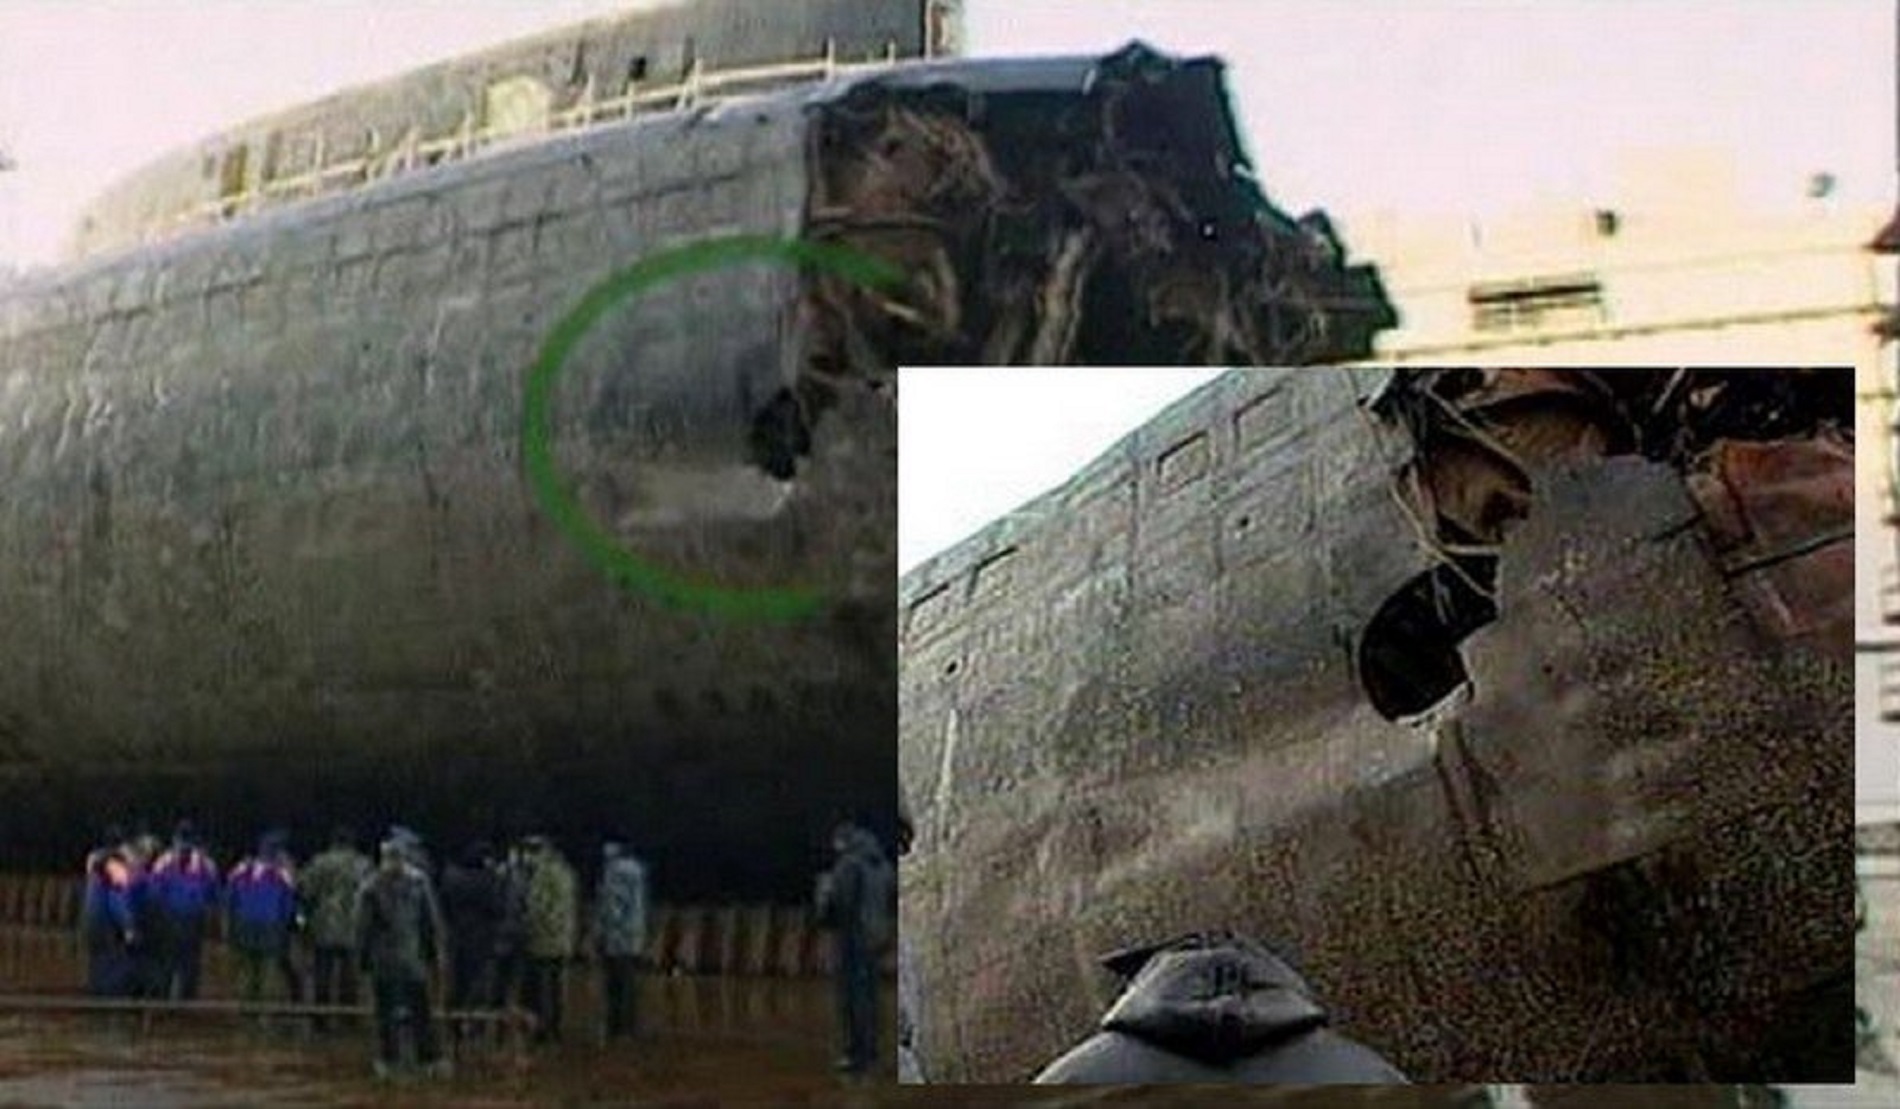 Курск ушел под воду. Подводная лодка к-141 «Курск». Гибель атомной подводной лодки к-141 "Курск". Потопление подводной лодки Курск. Трагедия 2000 года подводная лодка Курск.